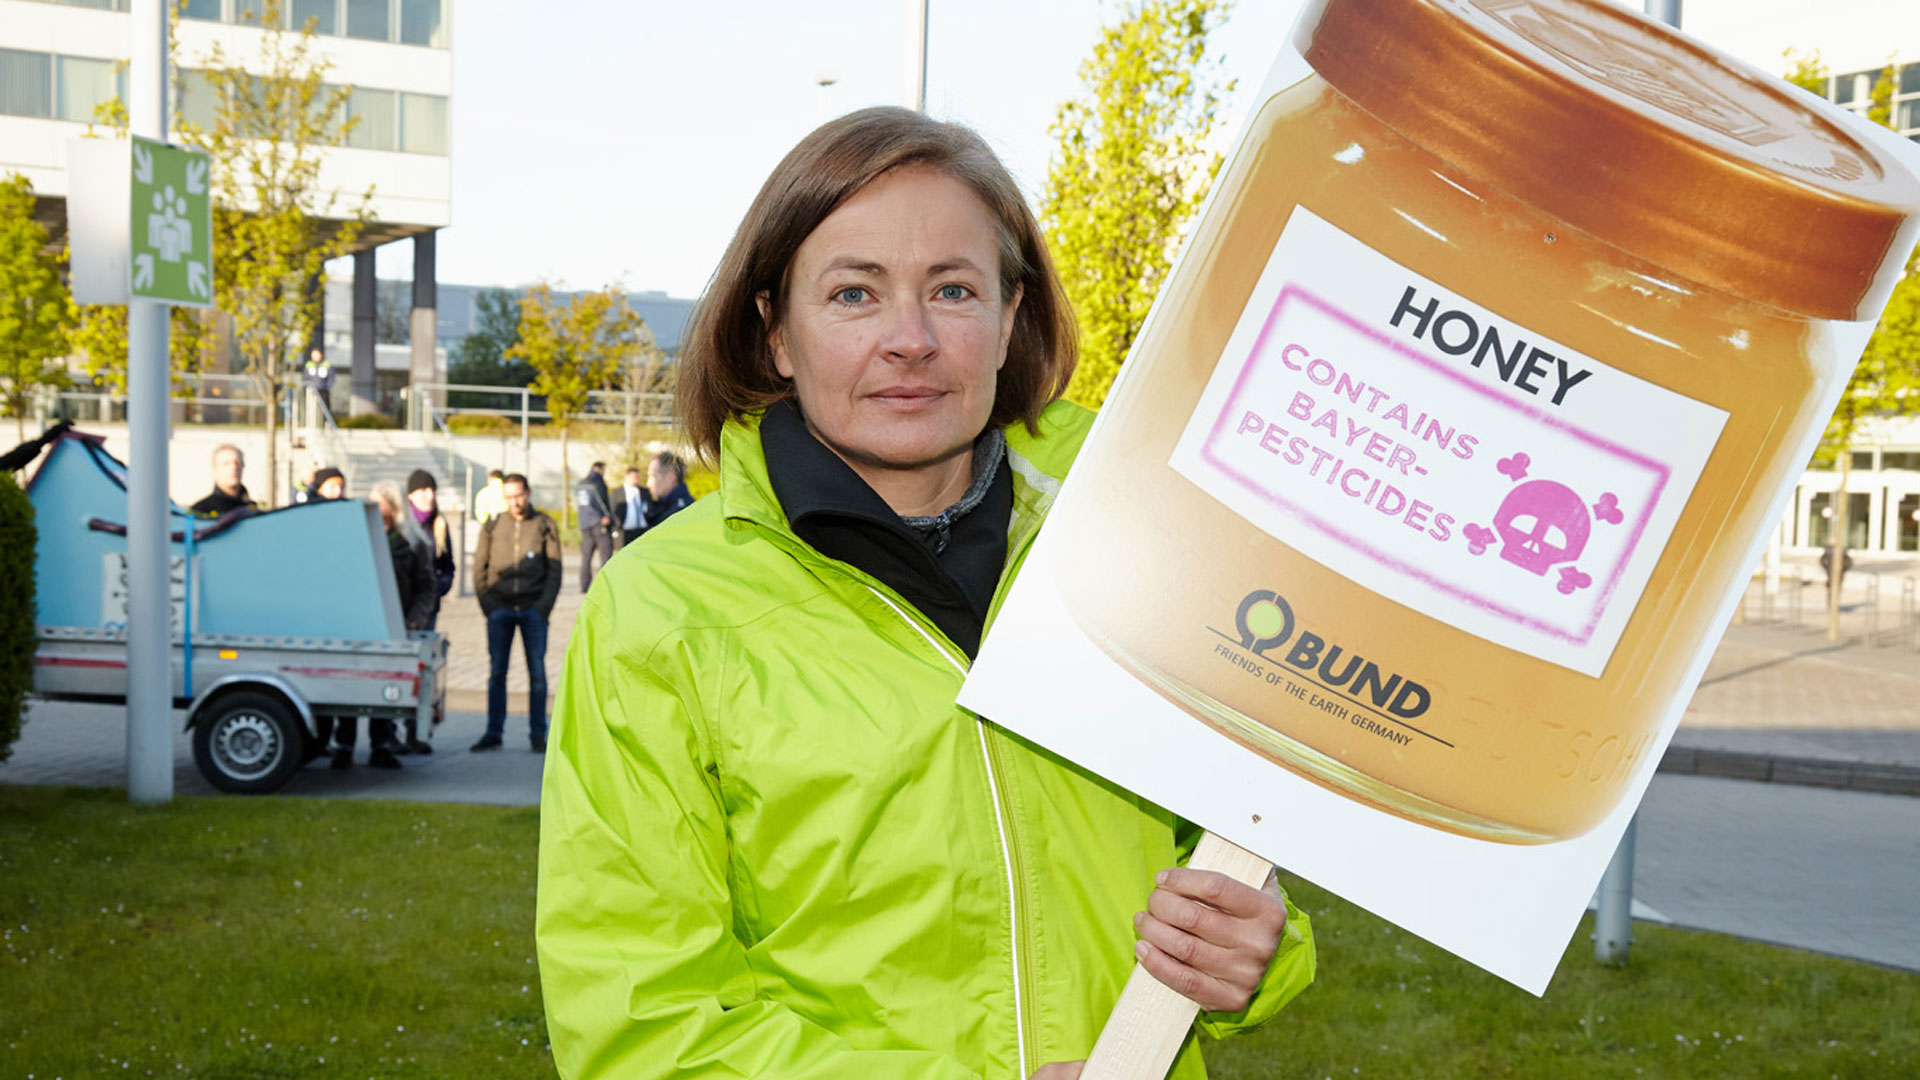 Protest bei Bayer-Hauptversammlung gegen bienengefährdende Pestizide und Gift im Honig